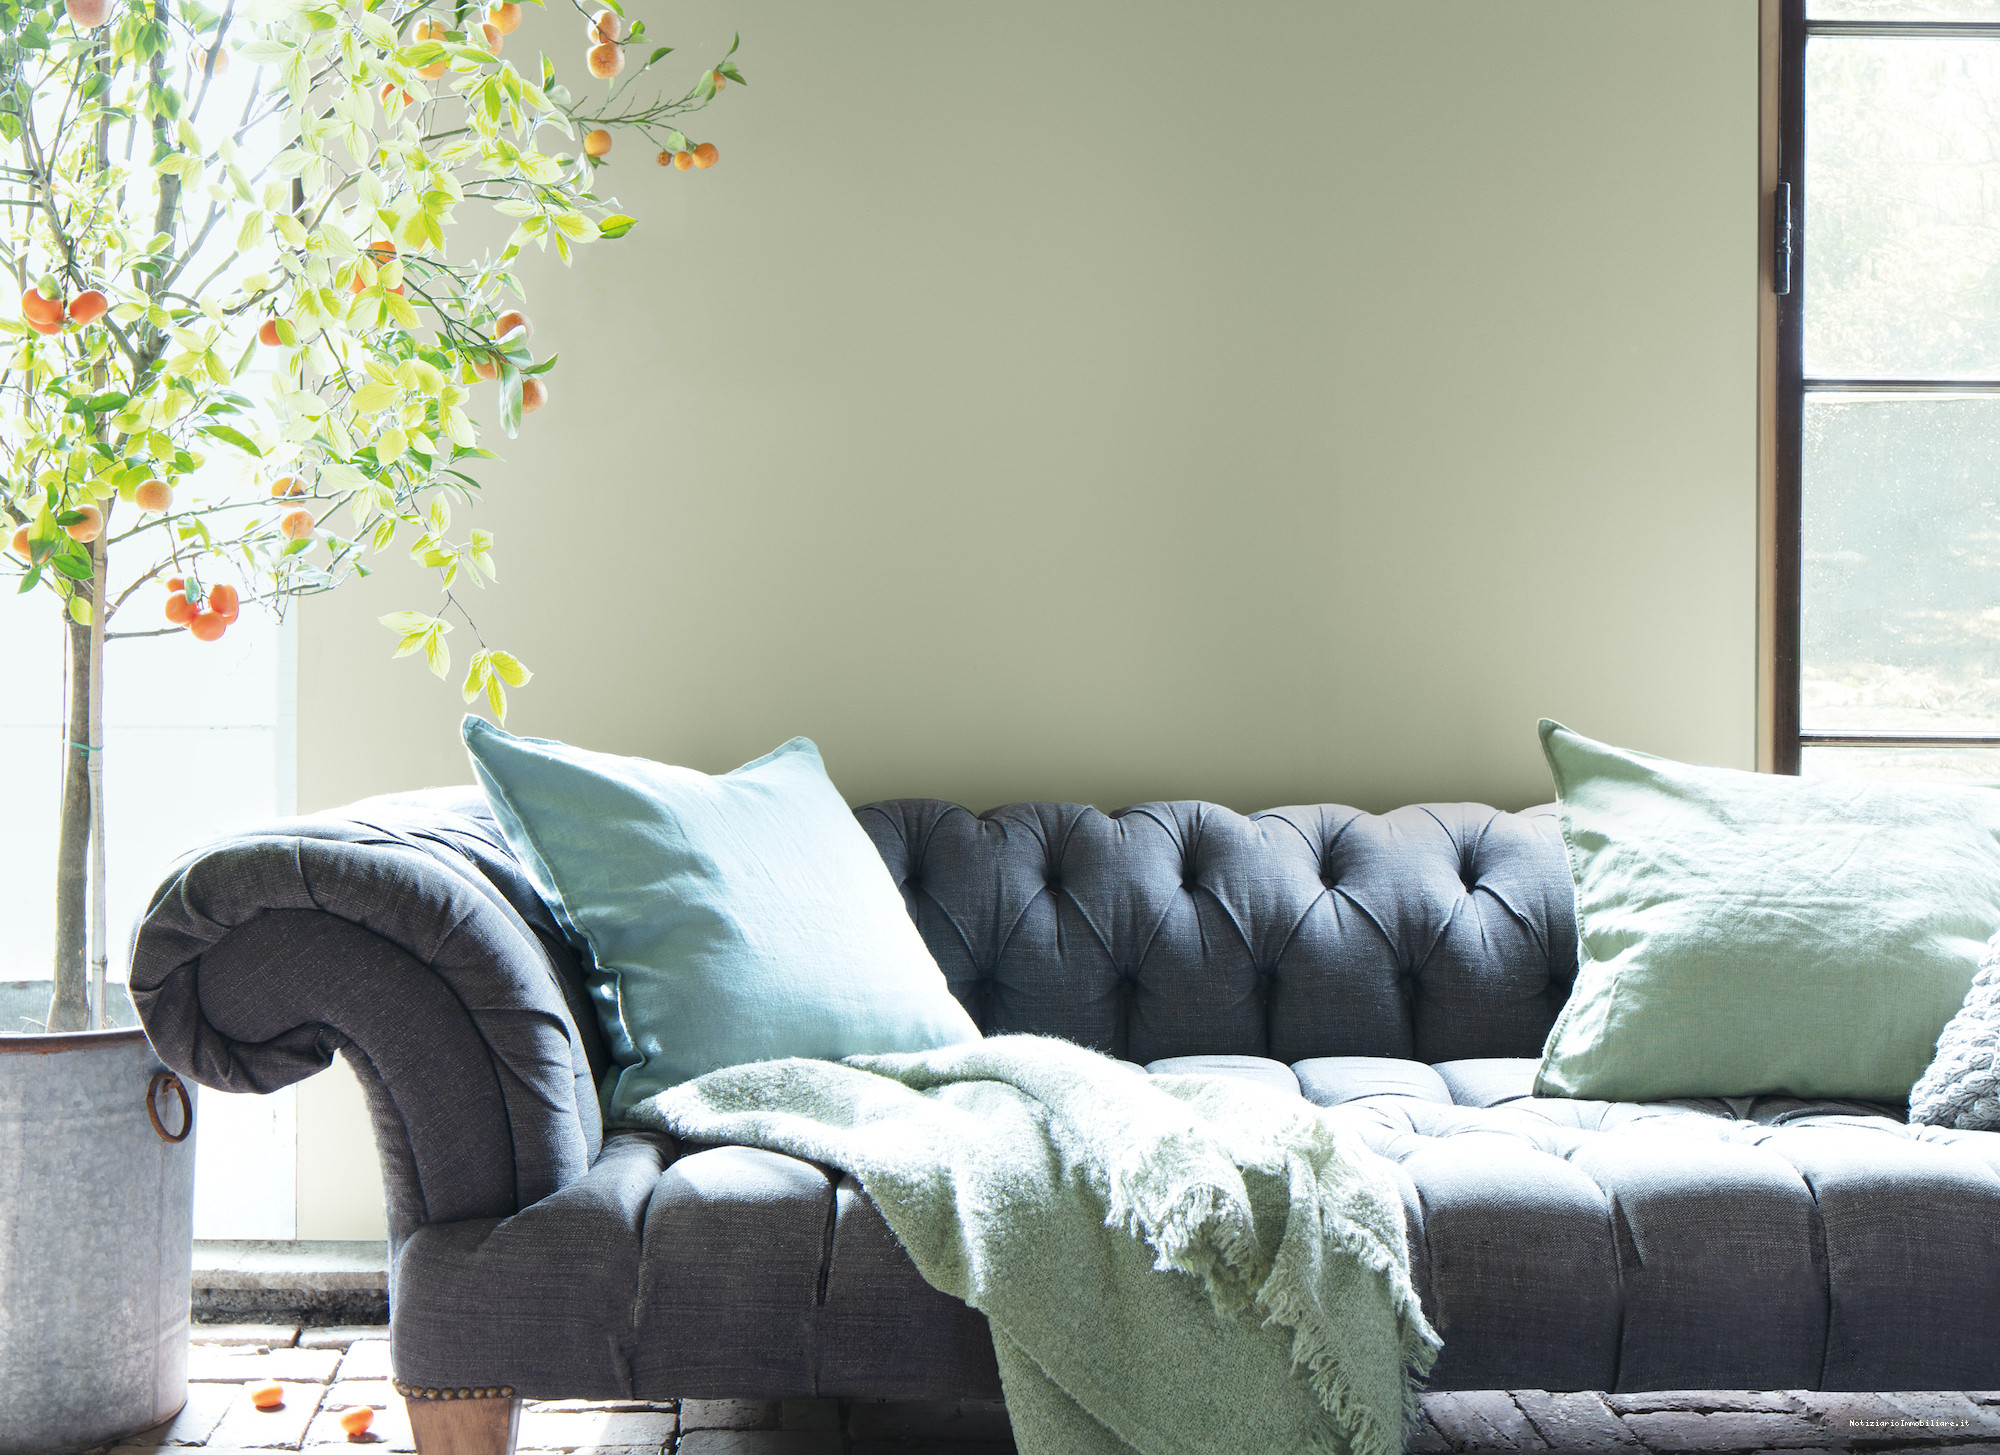 Vernice verde salvia in soggiorno con divano antracite